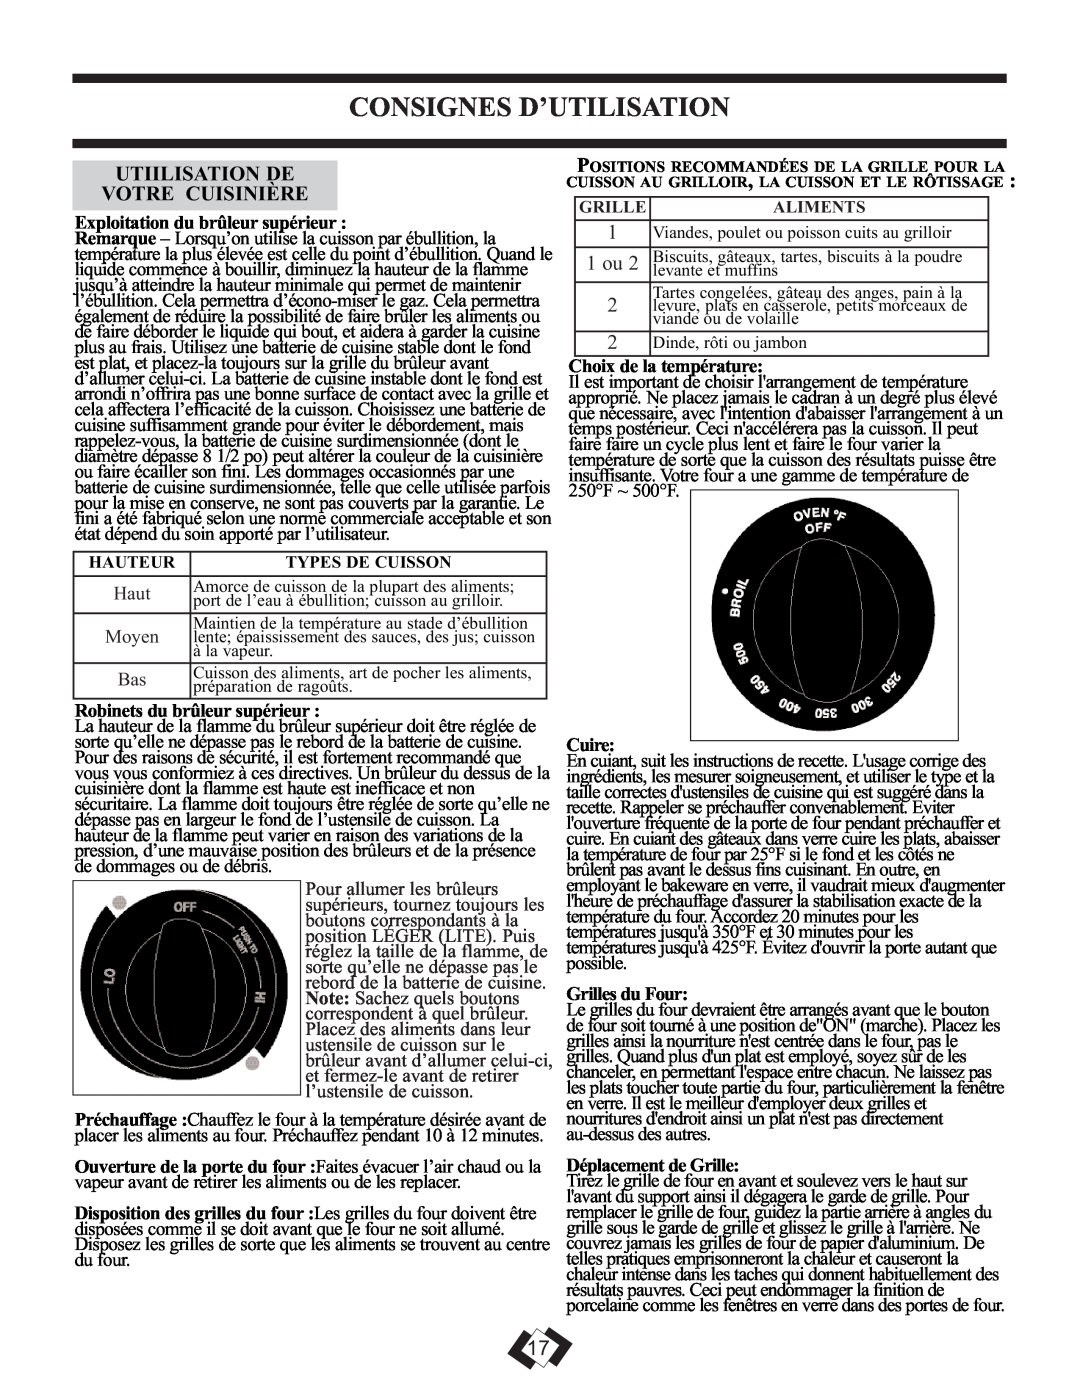 Danby DR399BLSGLP Consignes D’Utilisation, Exploitation du brûleur supérieur, Robinets du brûleur supérieur, Cuire 